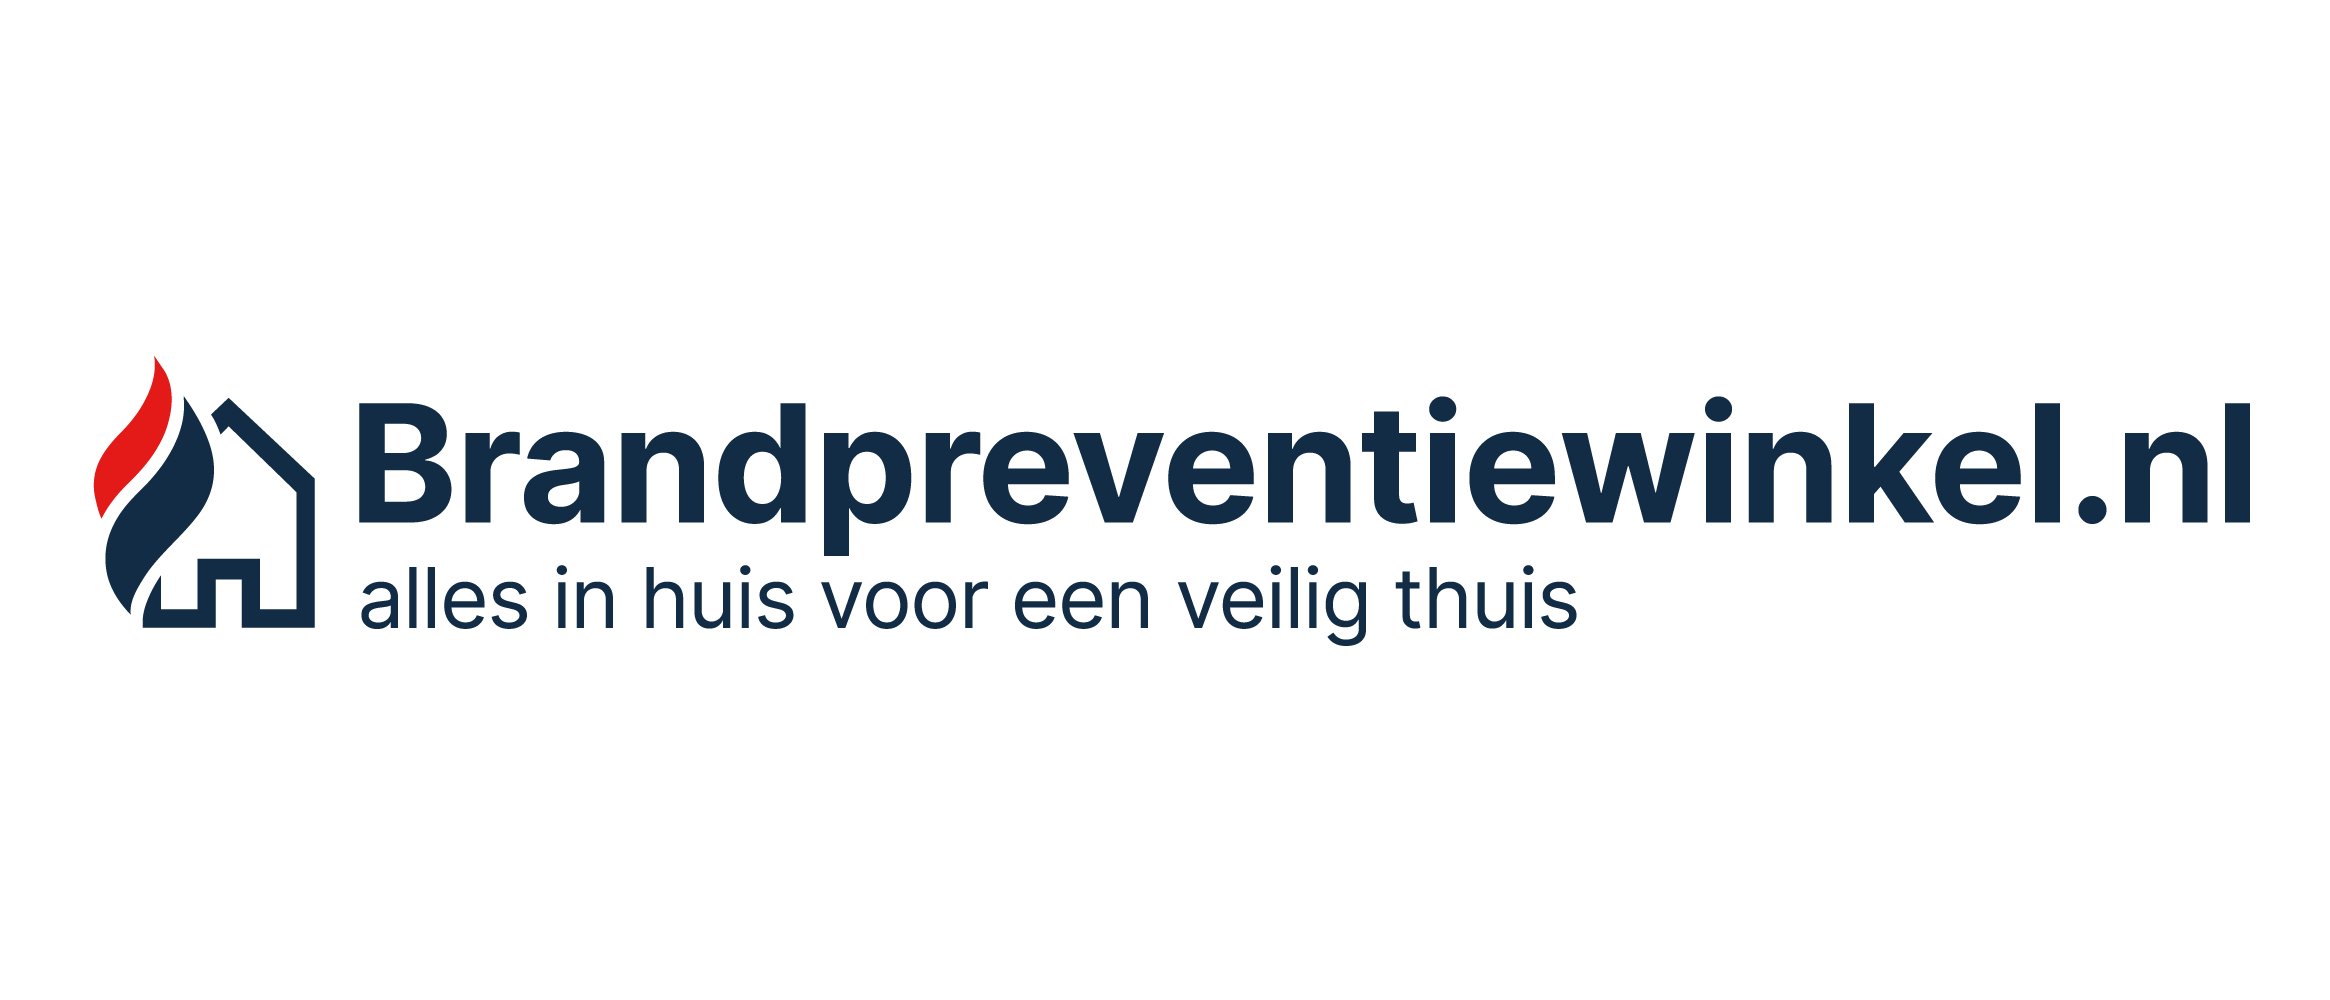 Brandpreventiewinkel.nl